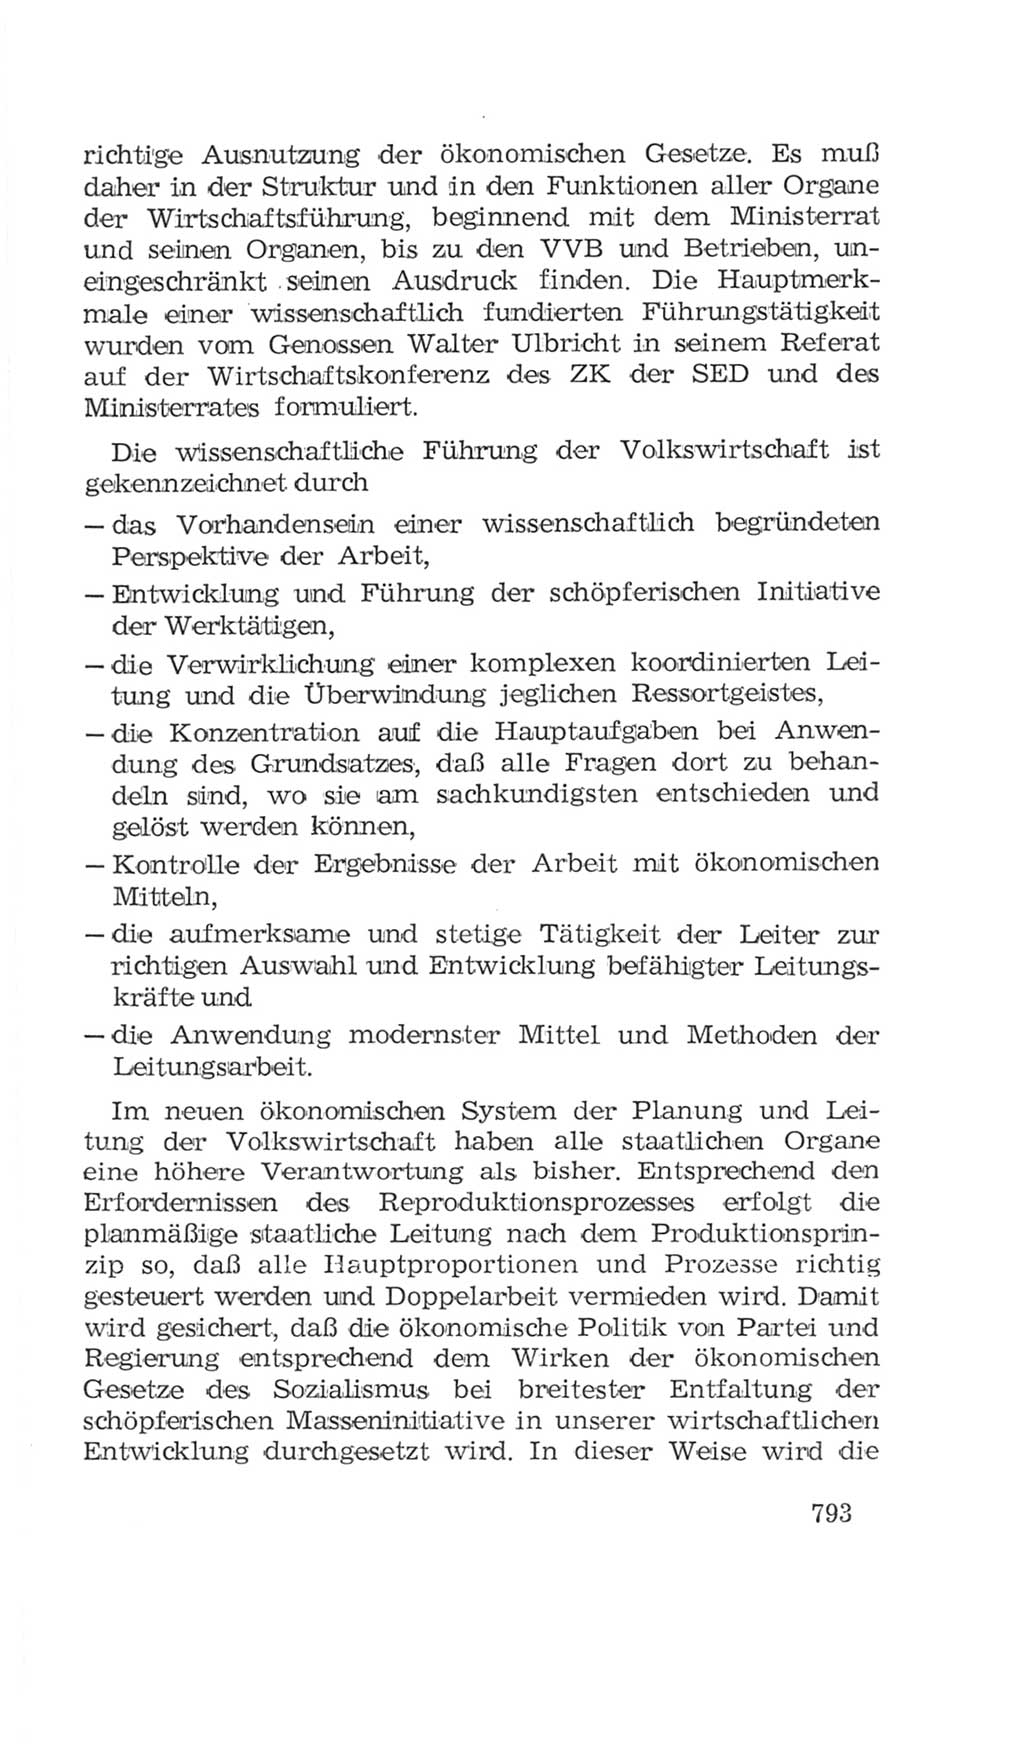 Volkskammer (VK) der Deutschen Demokratischen Republik (DDR), 4. Wahlperiode 1963-1967, Seite 793 (VK. DDR 4. WP. 1963-1967, S. 793)